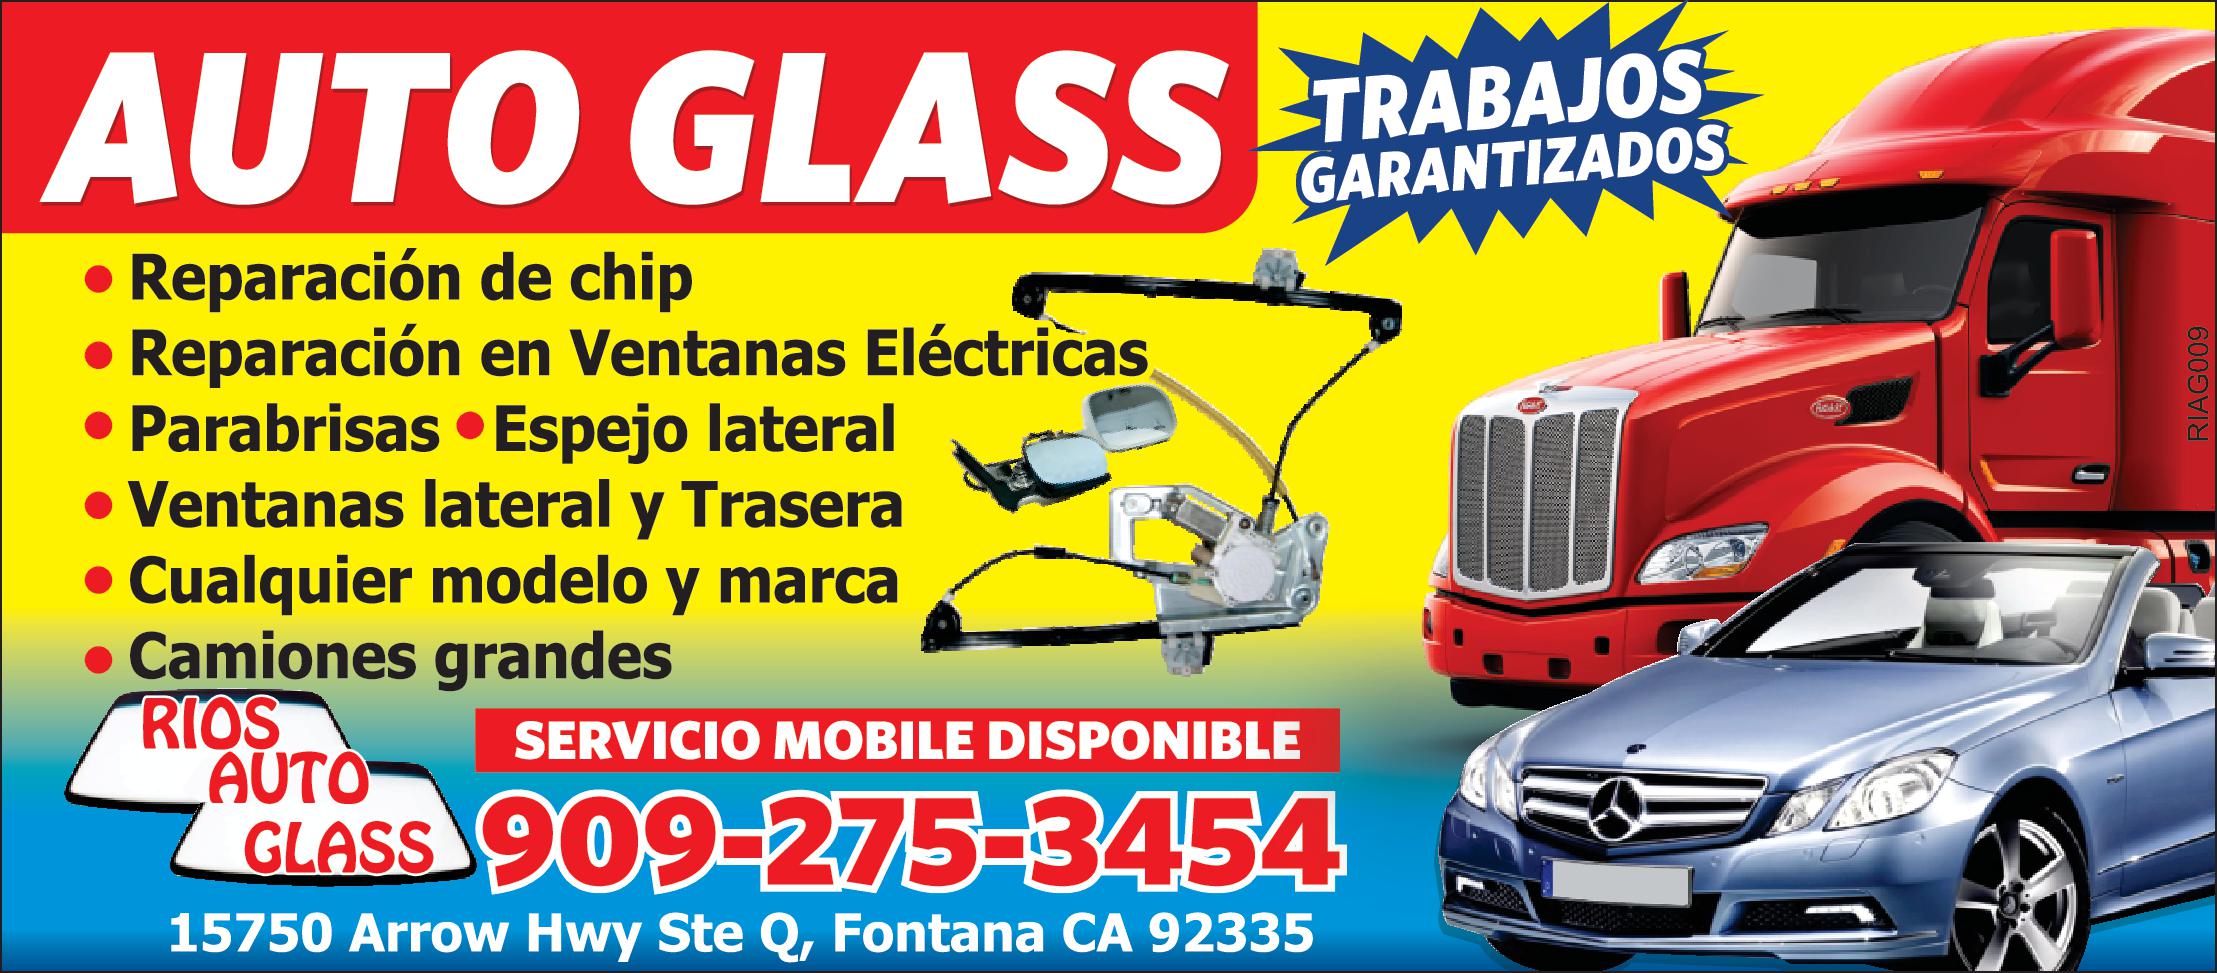 Rios Auto Glass